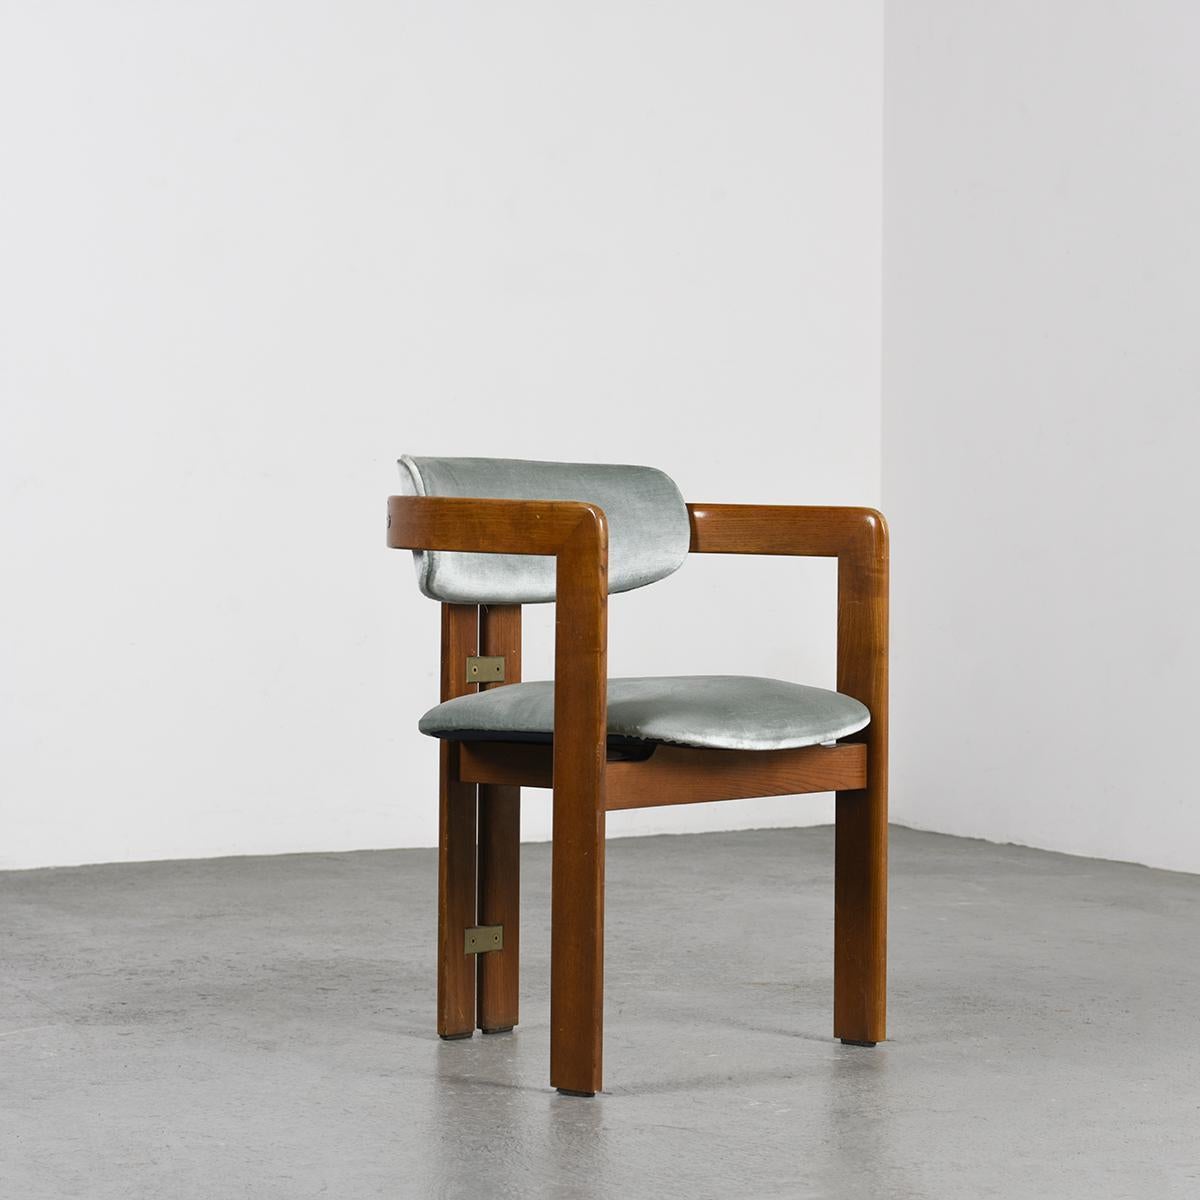 Nous apprécions beaucoup le fauteuil modèle Pamplona, un design exquis conçu par Augusto Savini dans les années 1960. Sa construction en palissandre massif façonne gracieusement deux arcs au niveau des pieds arrière, élégamment reliés par deux